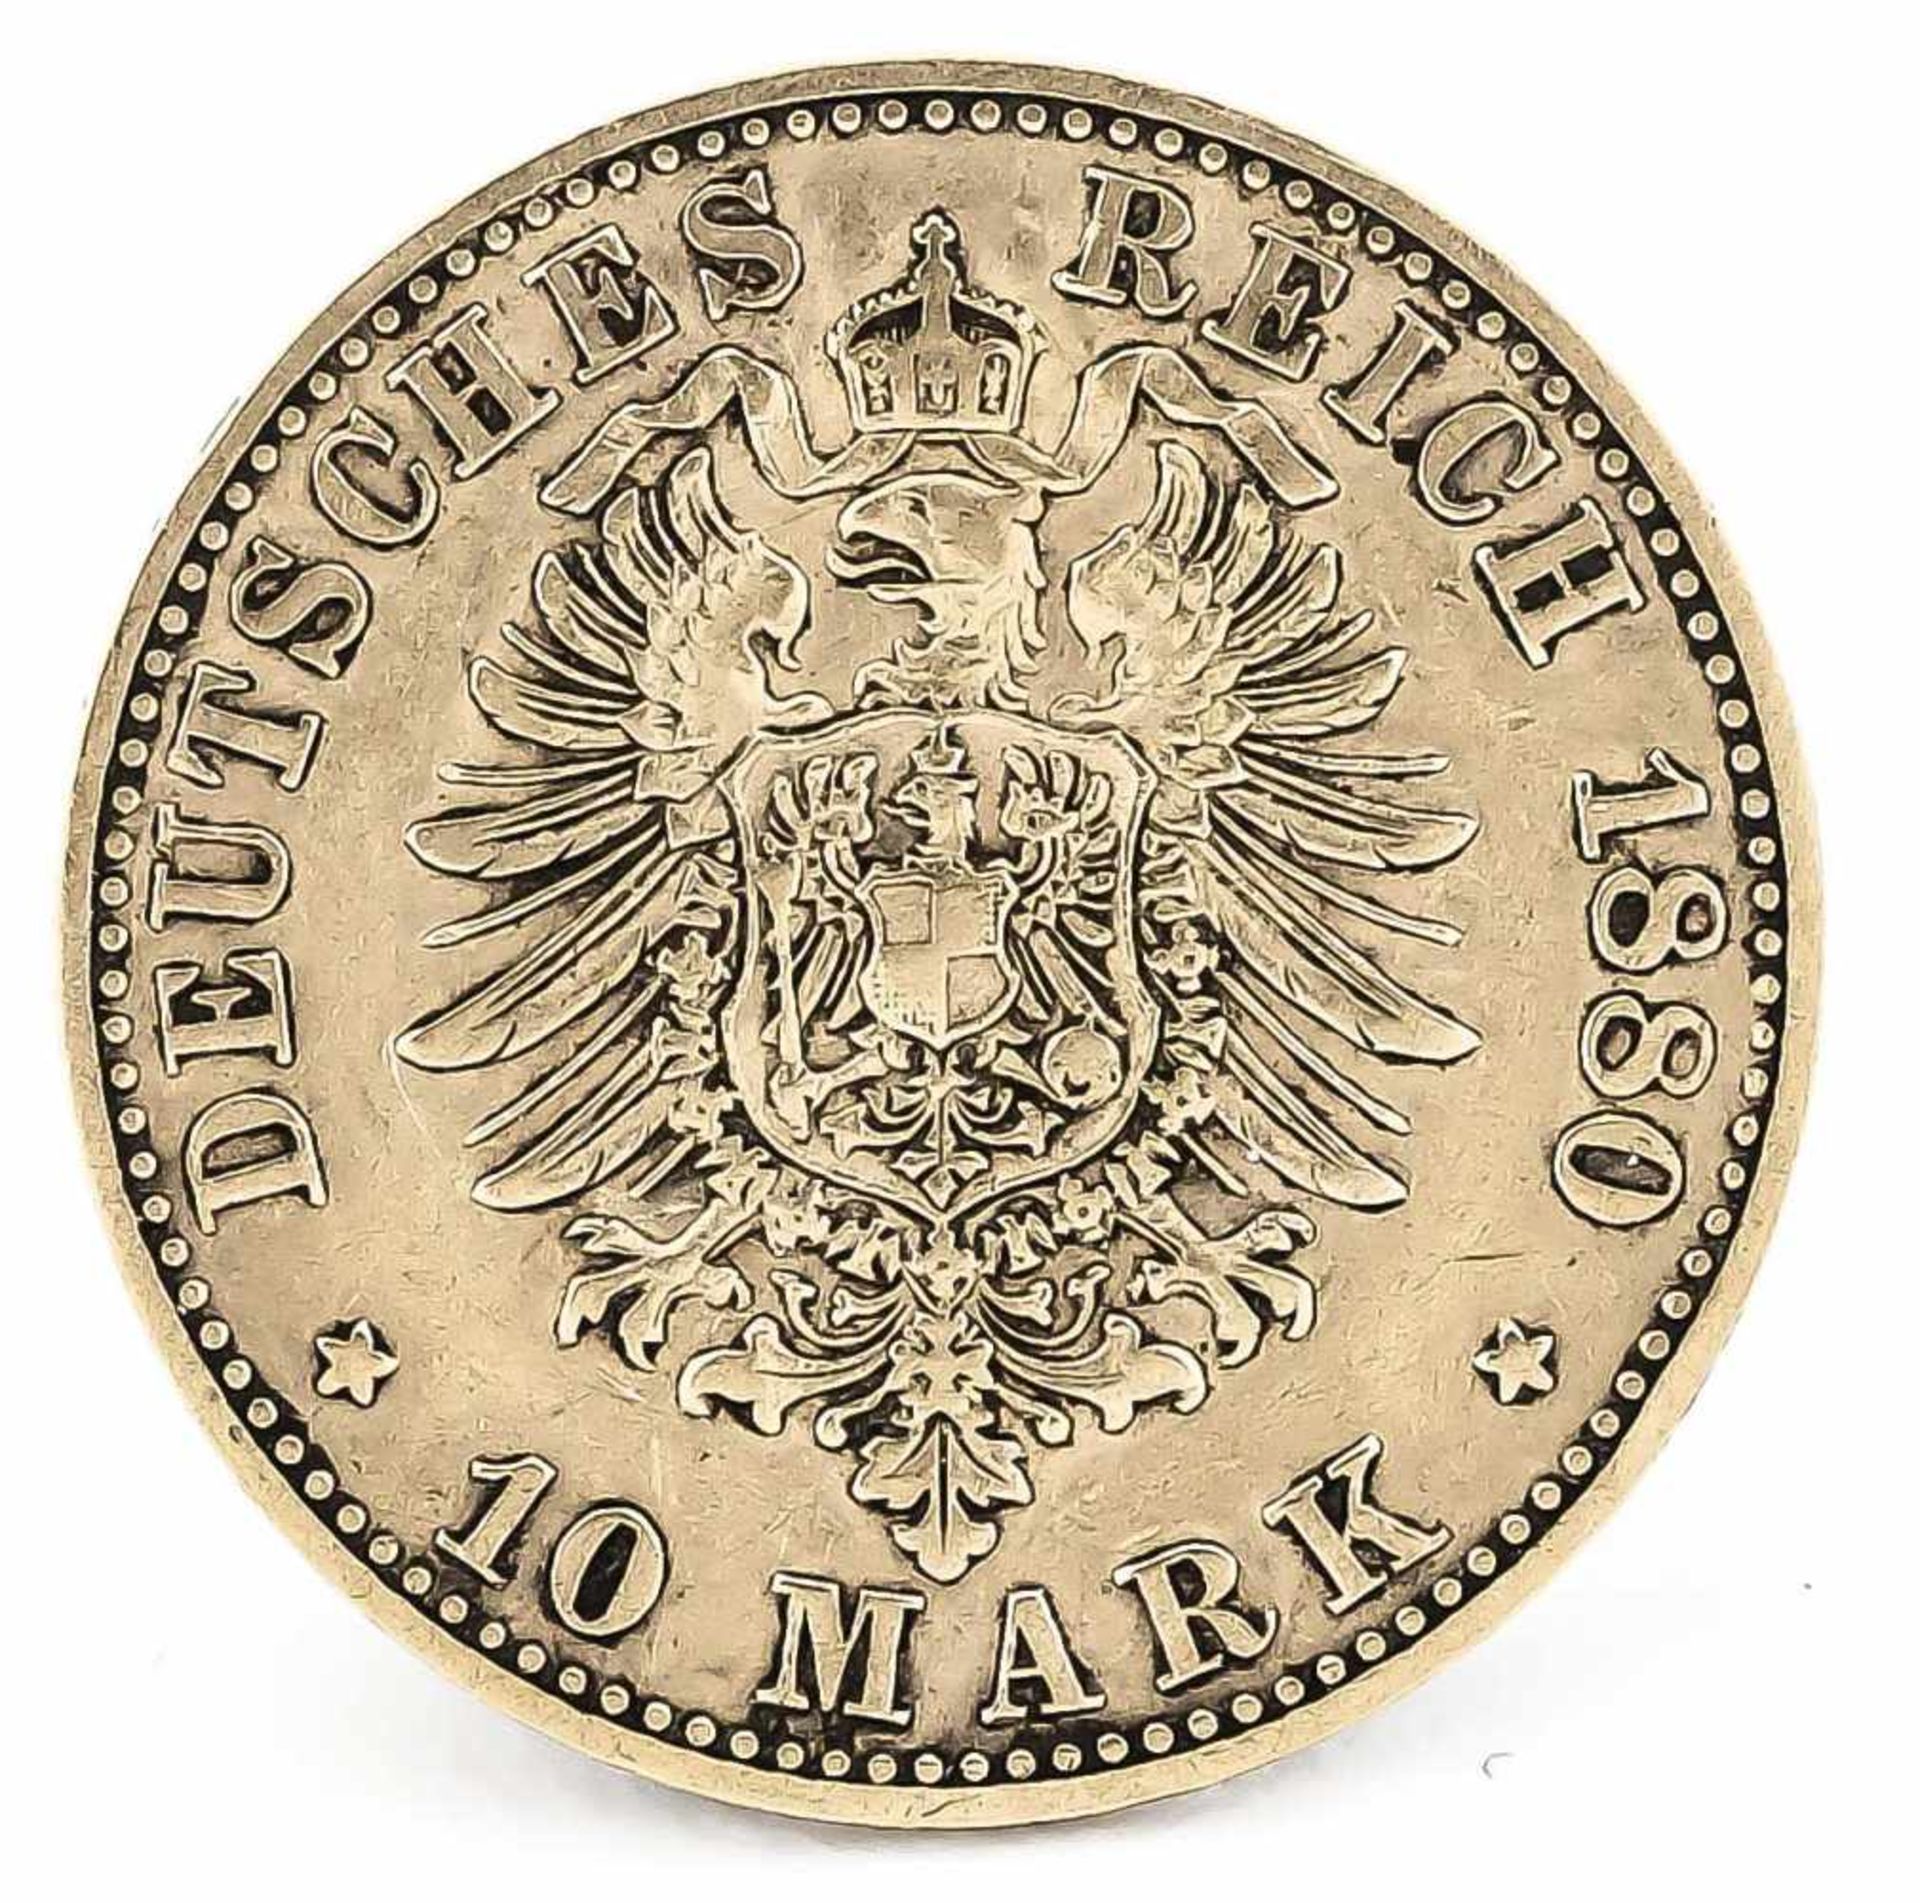 10 Mark, Preußen, Wilhelm Deutscher Kaiser König von Preußen, 1880 A, in s-ss - Bild 2 aus 2